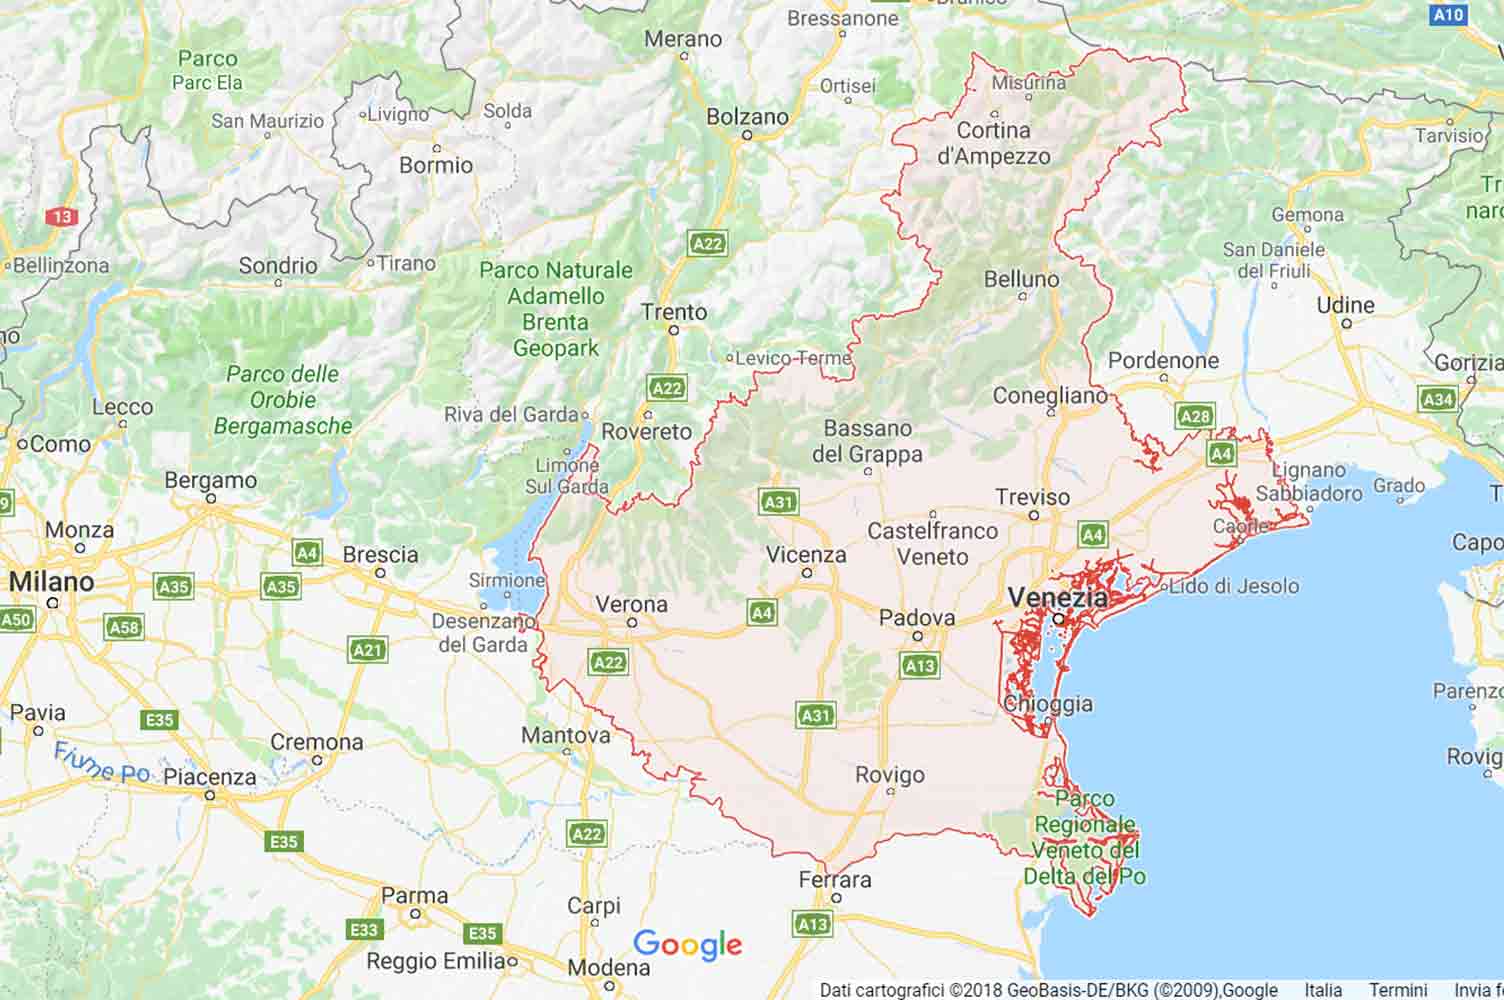 Veneto - Padova - Due Carrare Preventivi Veloci google maps